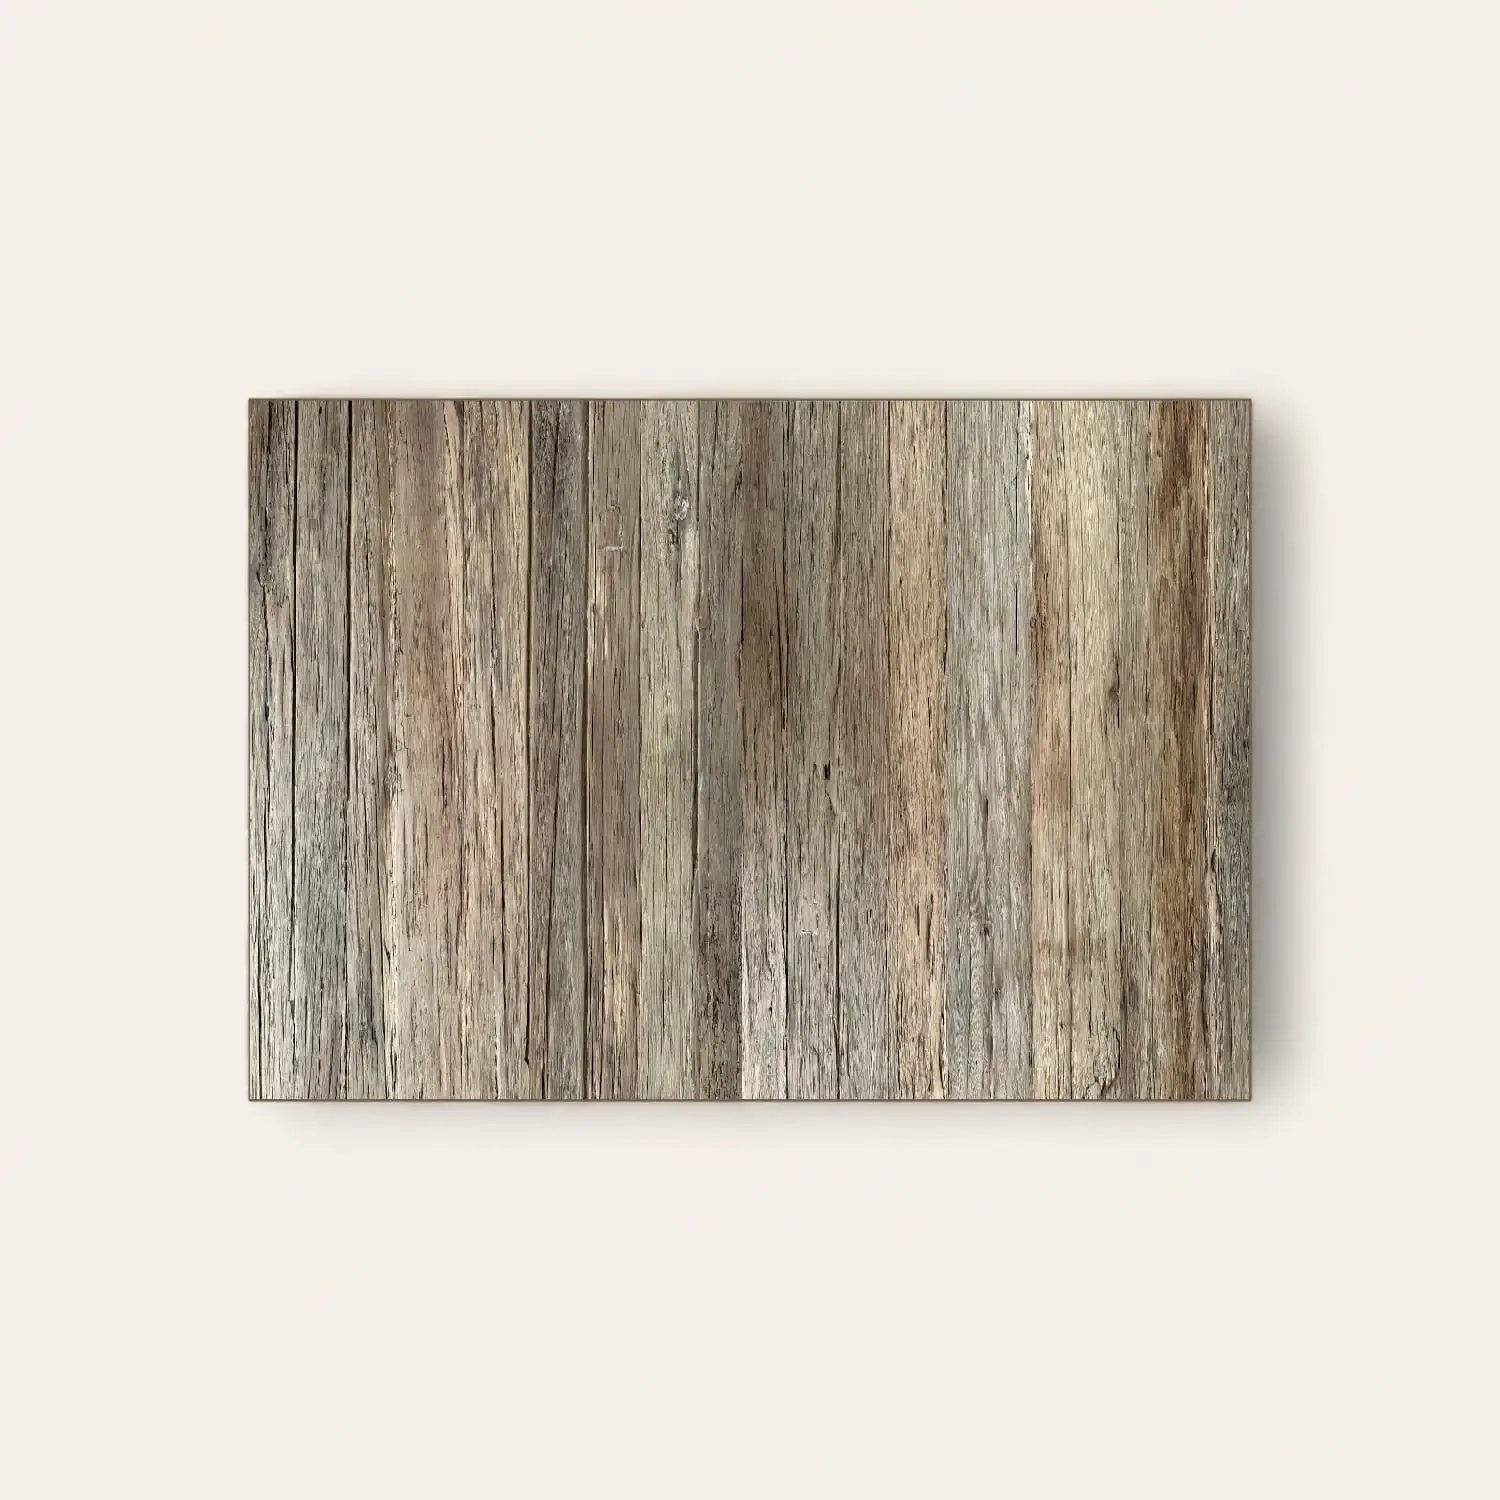  Vieilles planches de bois texturées disposées horizontalement. 